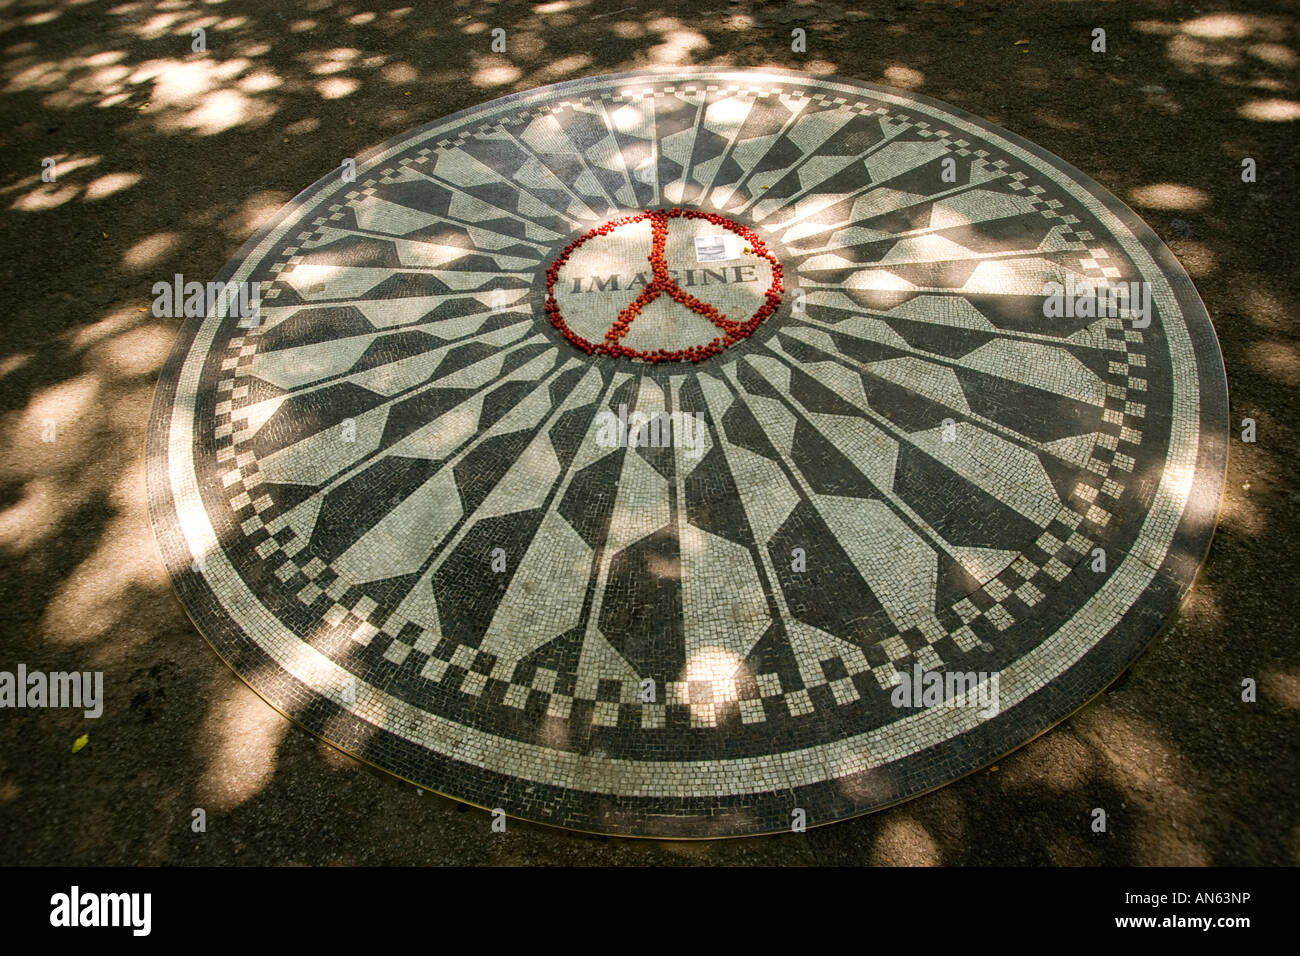 John Lennon Imagine Mosaic in Strawberry Fields Central Park, New York Stock Photo